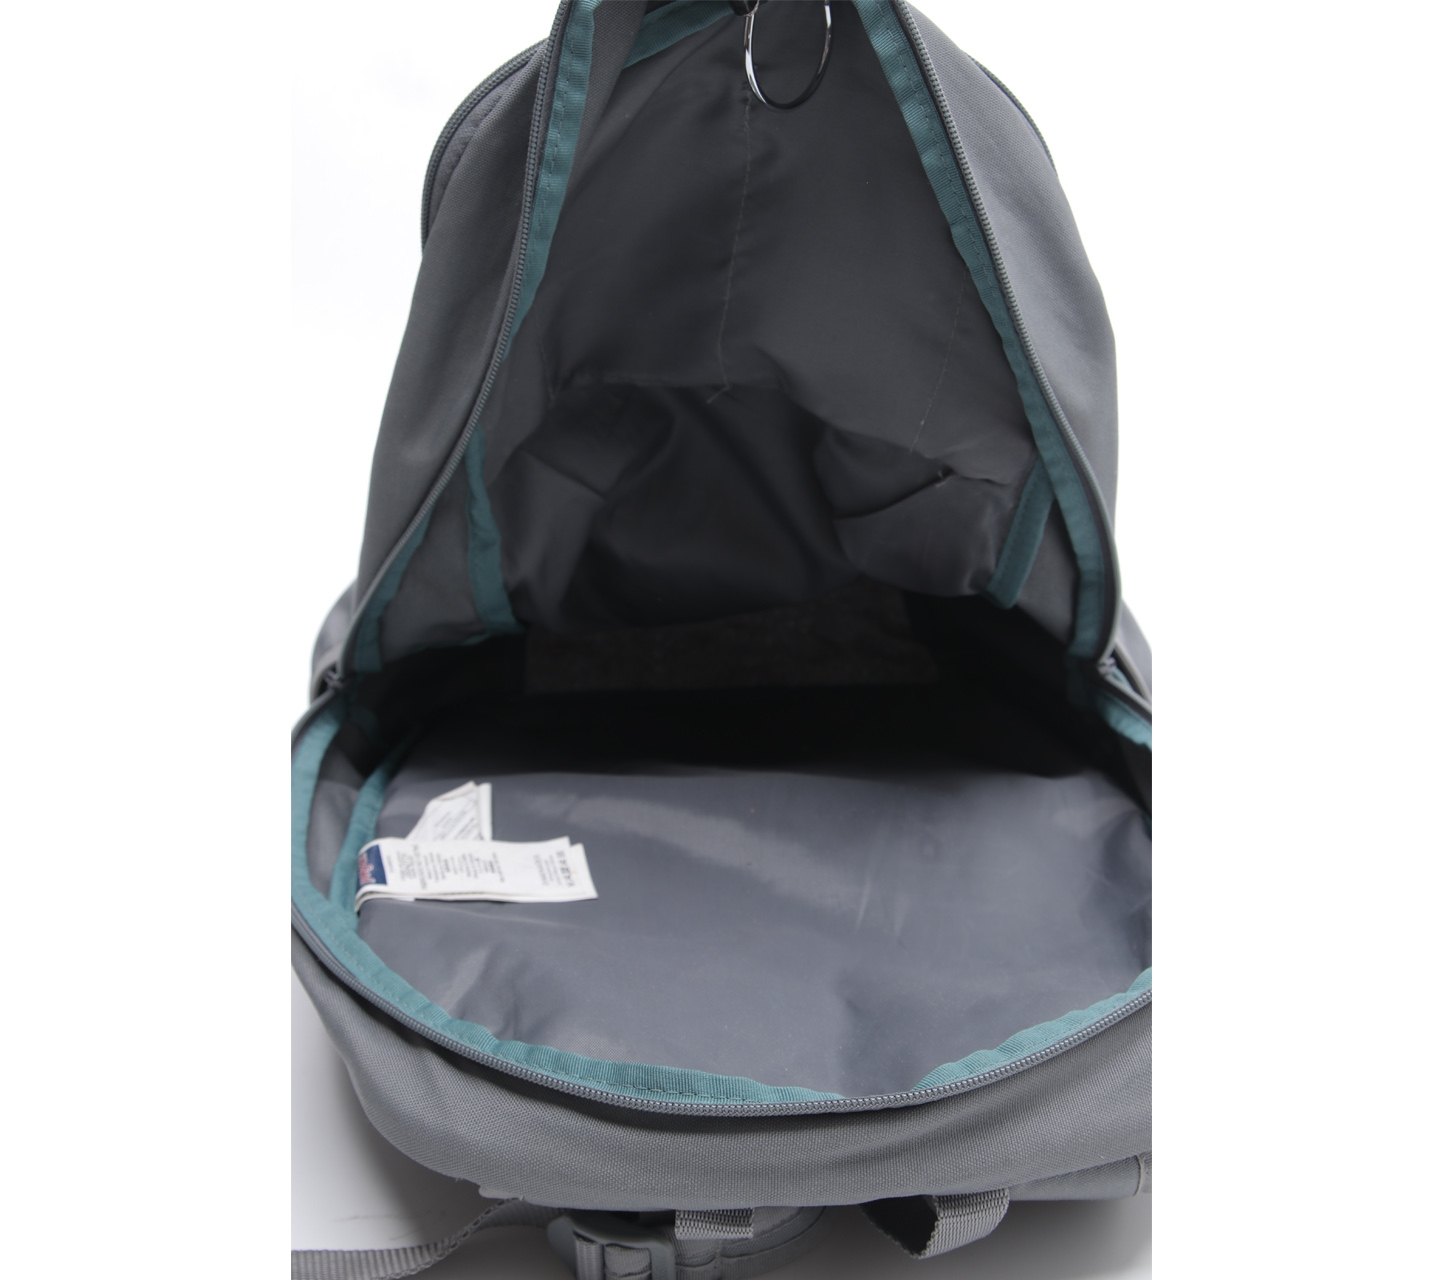 Jansport Green & Grey Backpack